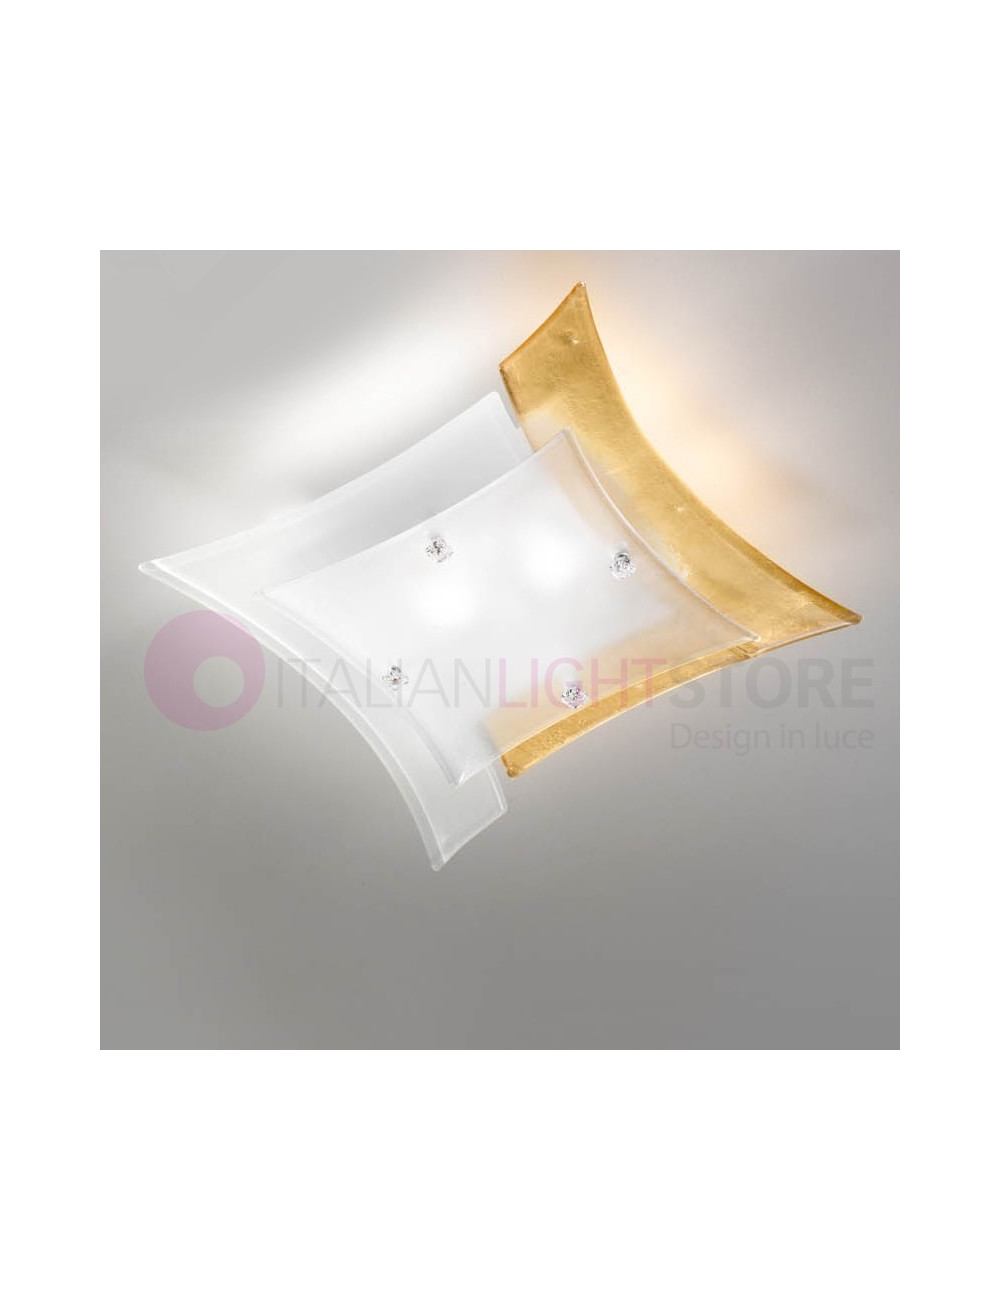 OREGON Ceiling light ceiling lamp Modern Murano Glass L. 44 Cm